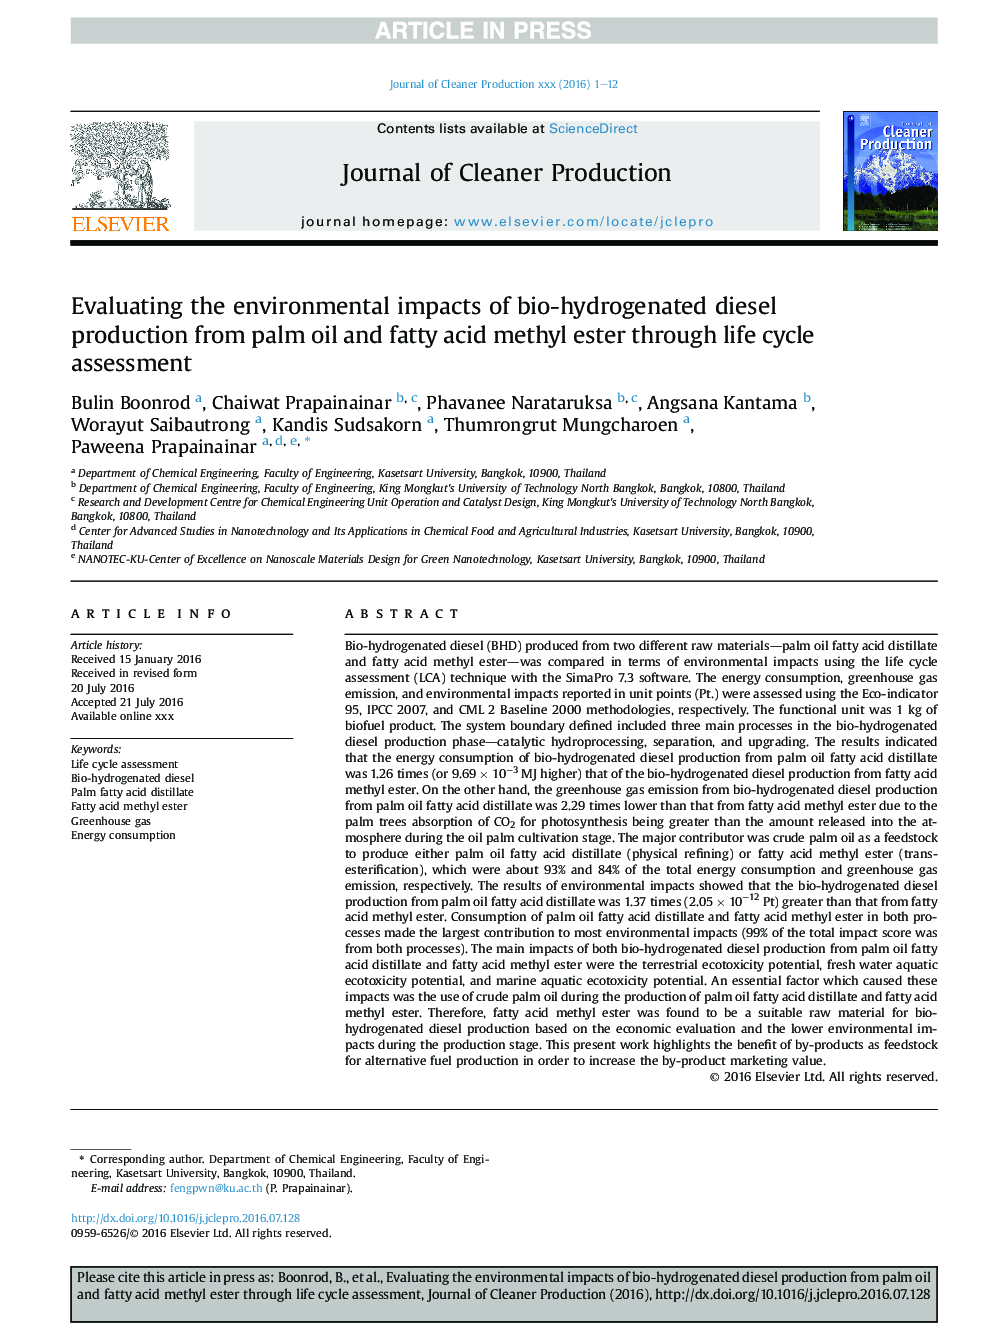 ارزیابی اثرات زیست محیطی تولید دیزل زیستی از روغن نخل و متیل استر اسید چرب به وسیله ارزیابی چرخه عمر 